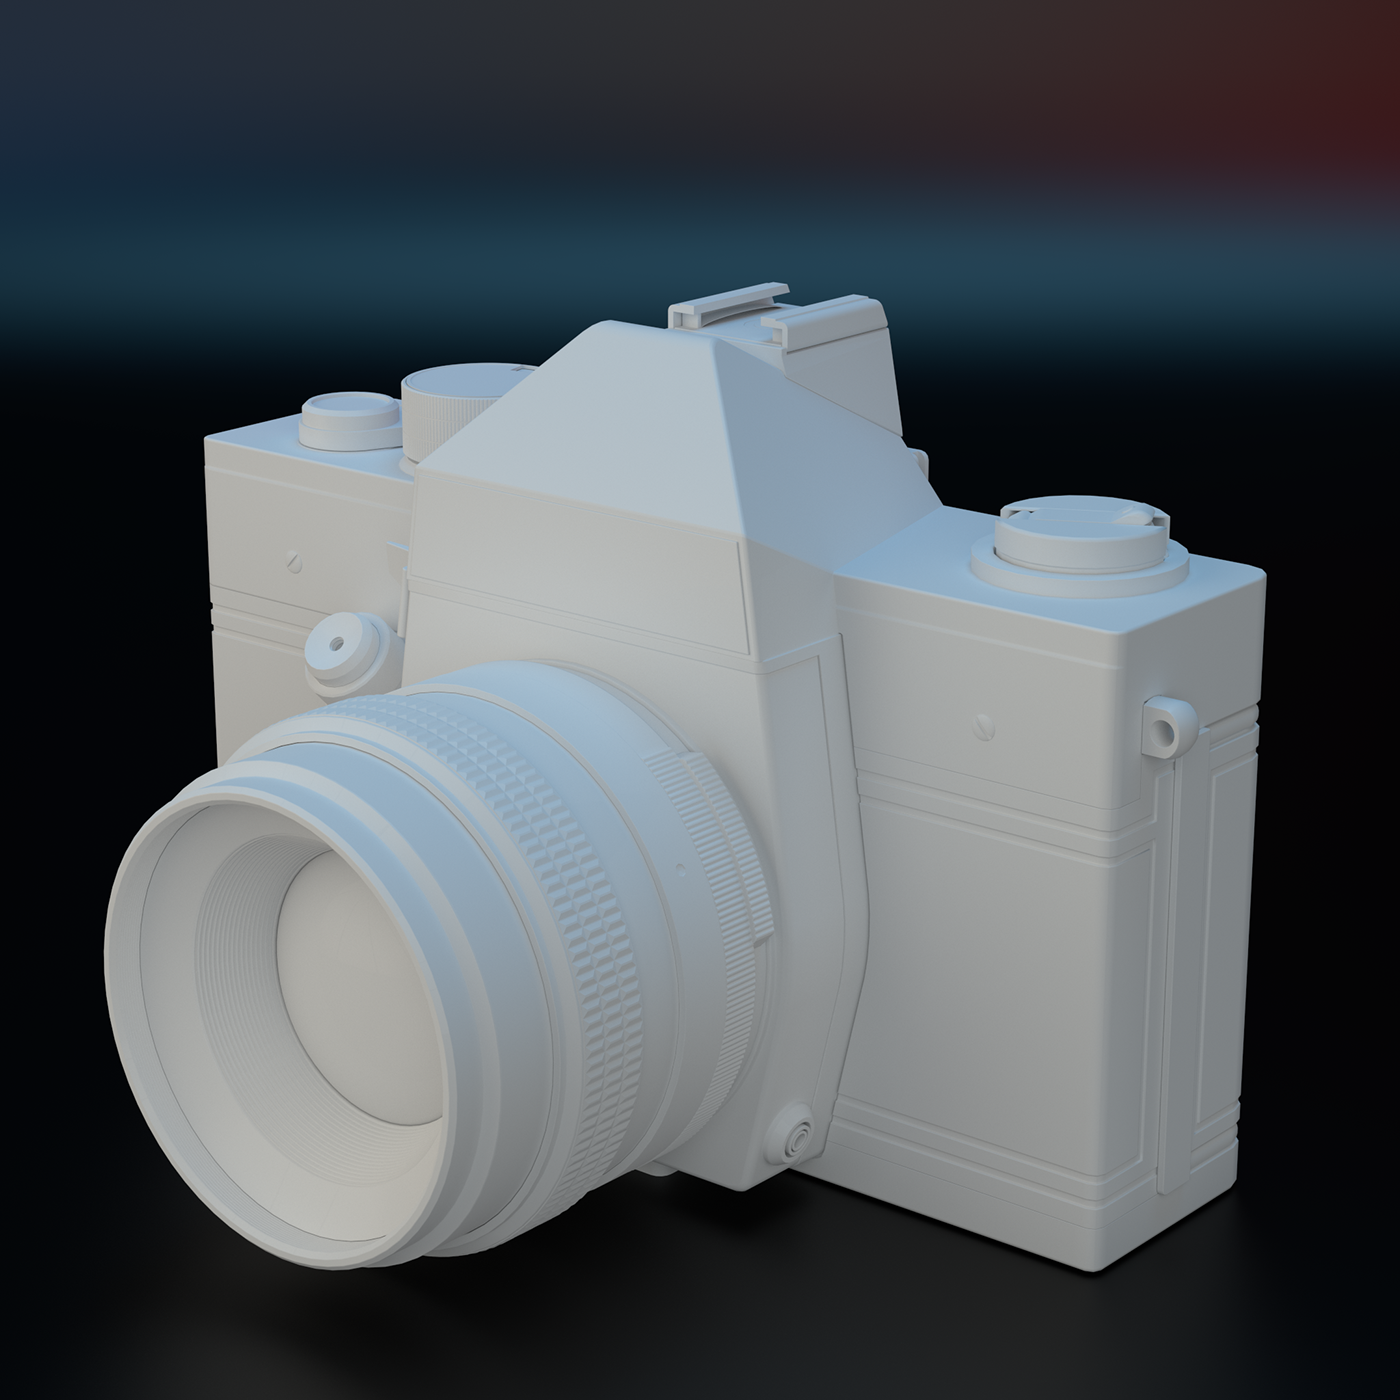 cameras modeling 3D blender clay renders blender 3d vintage cameras